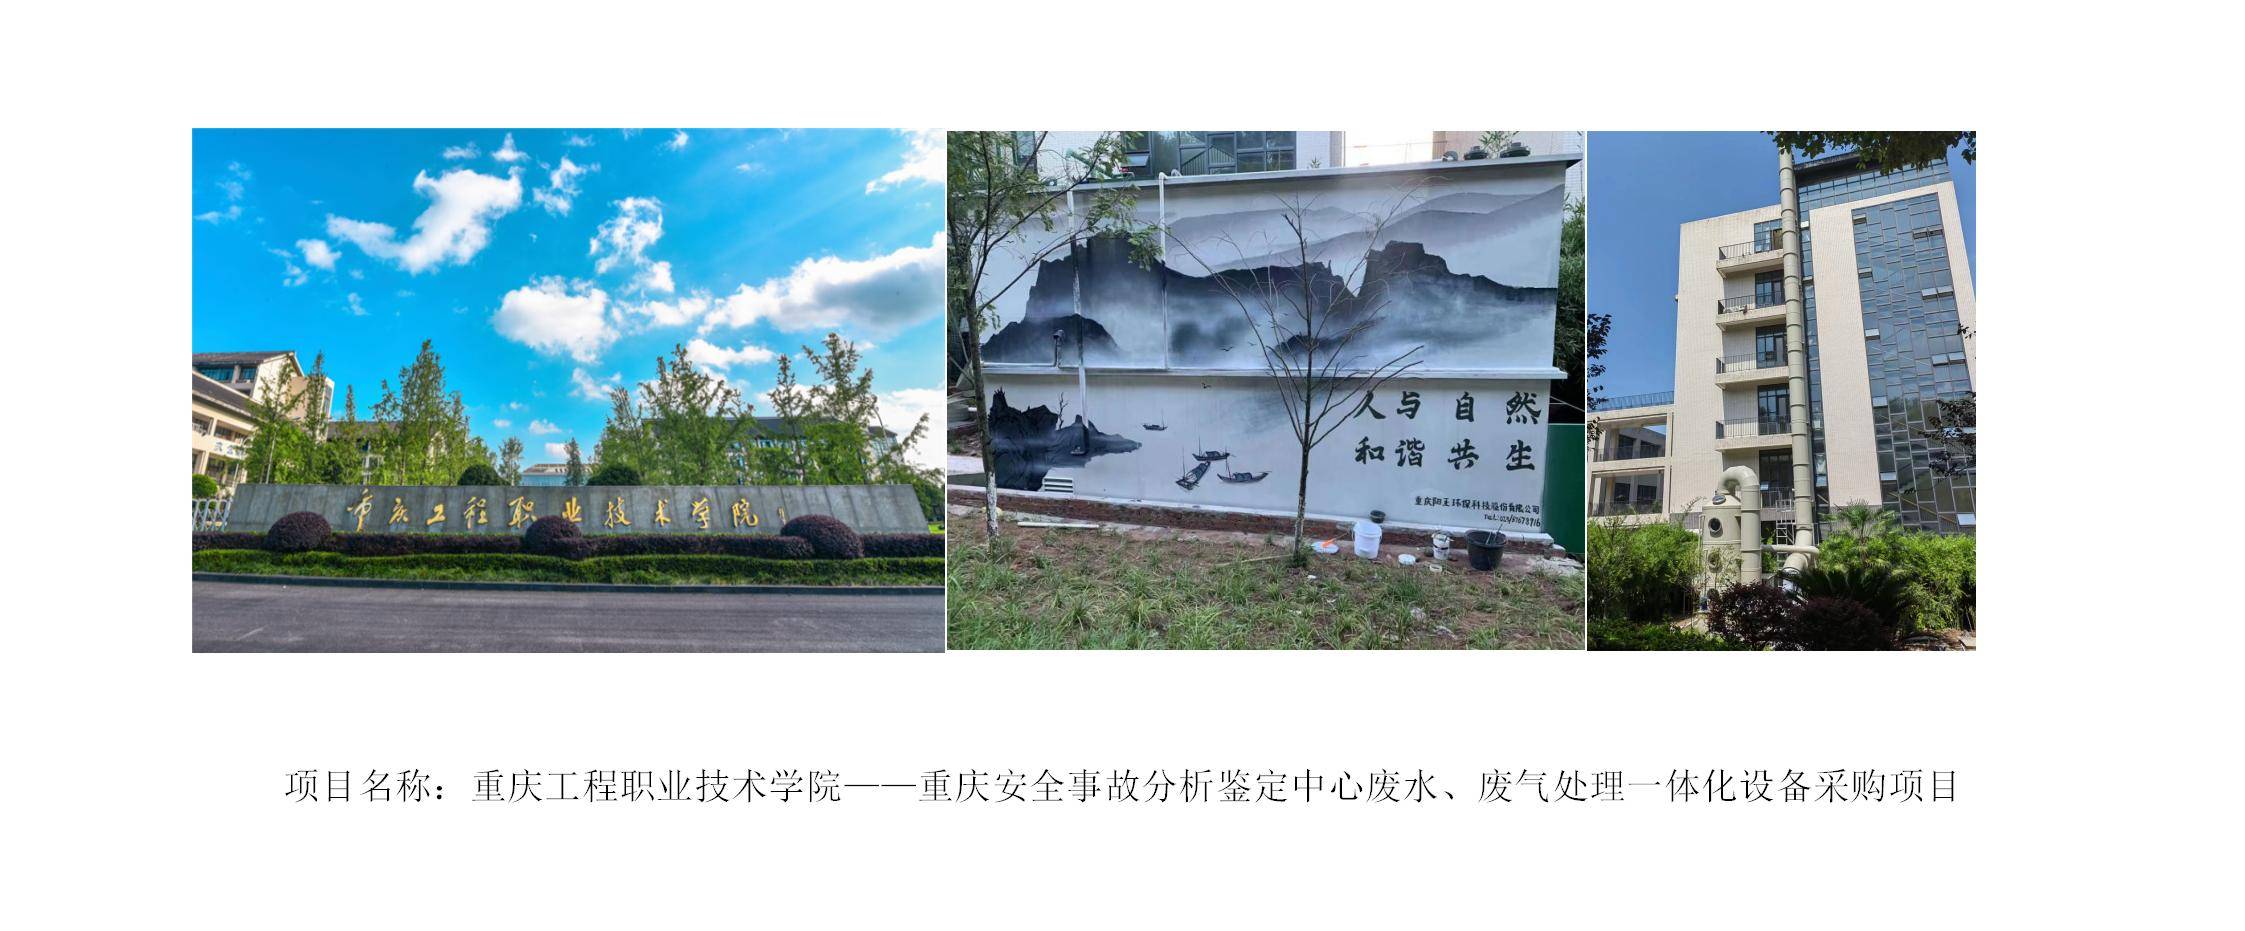 重庆工程职业技术学院重庆安全事故分析鉴定中心废水、废气处理一体化设备采购项目